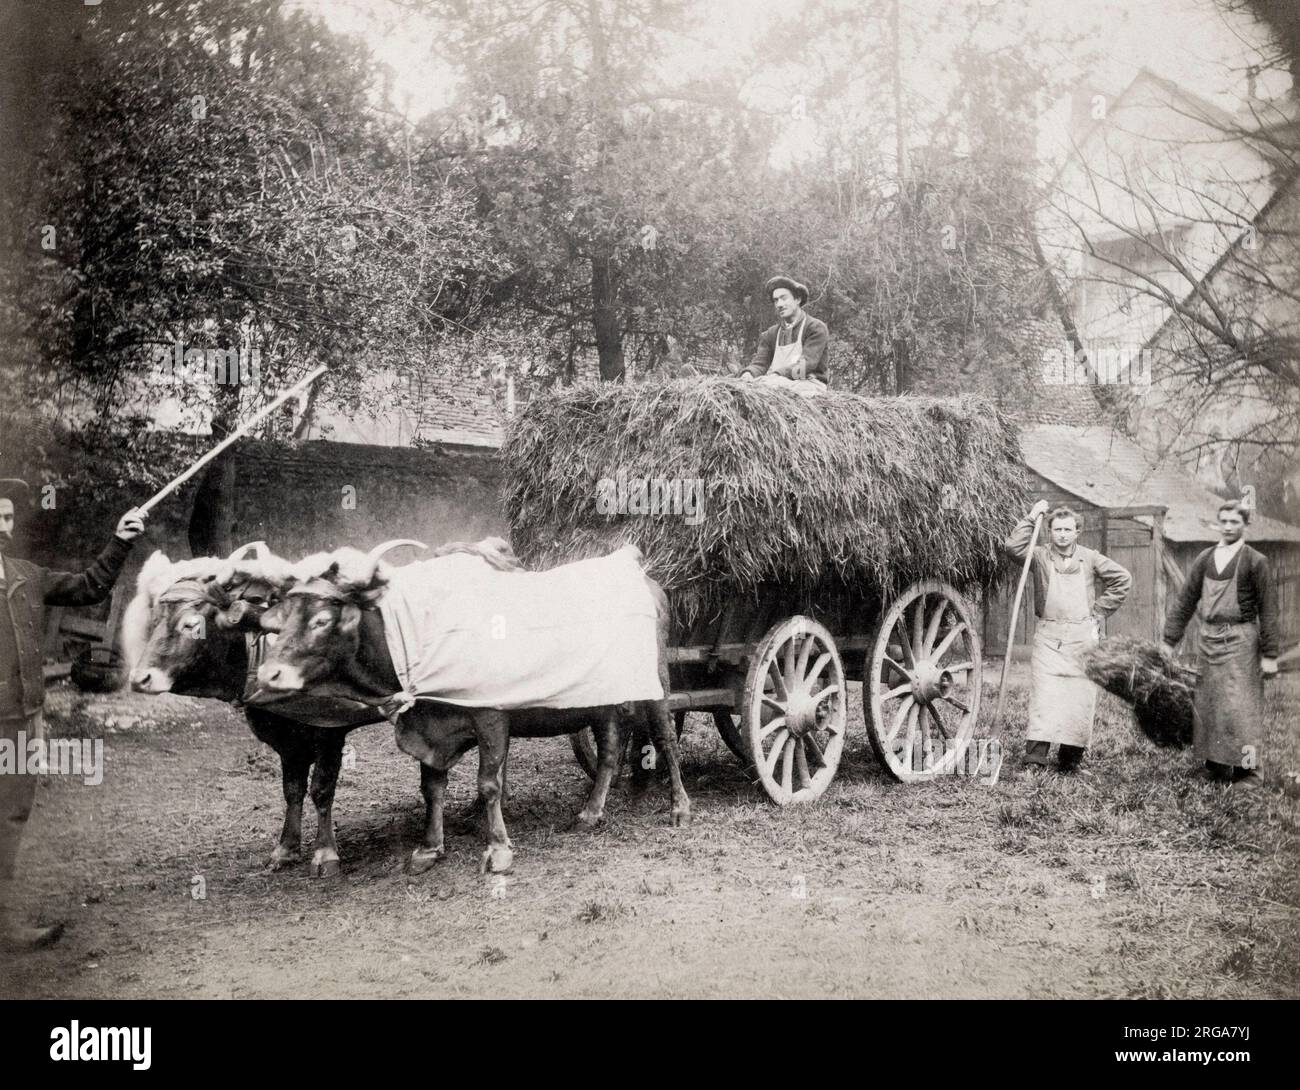 Farmwagen mit Heu beladen, Farmarbeiter mit Mistgabeln, europäisch. Vintage 19. Jahrhundert Foto. Stockfoto